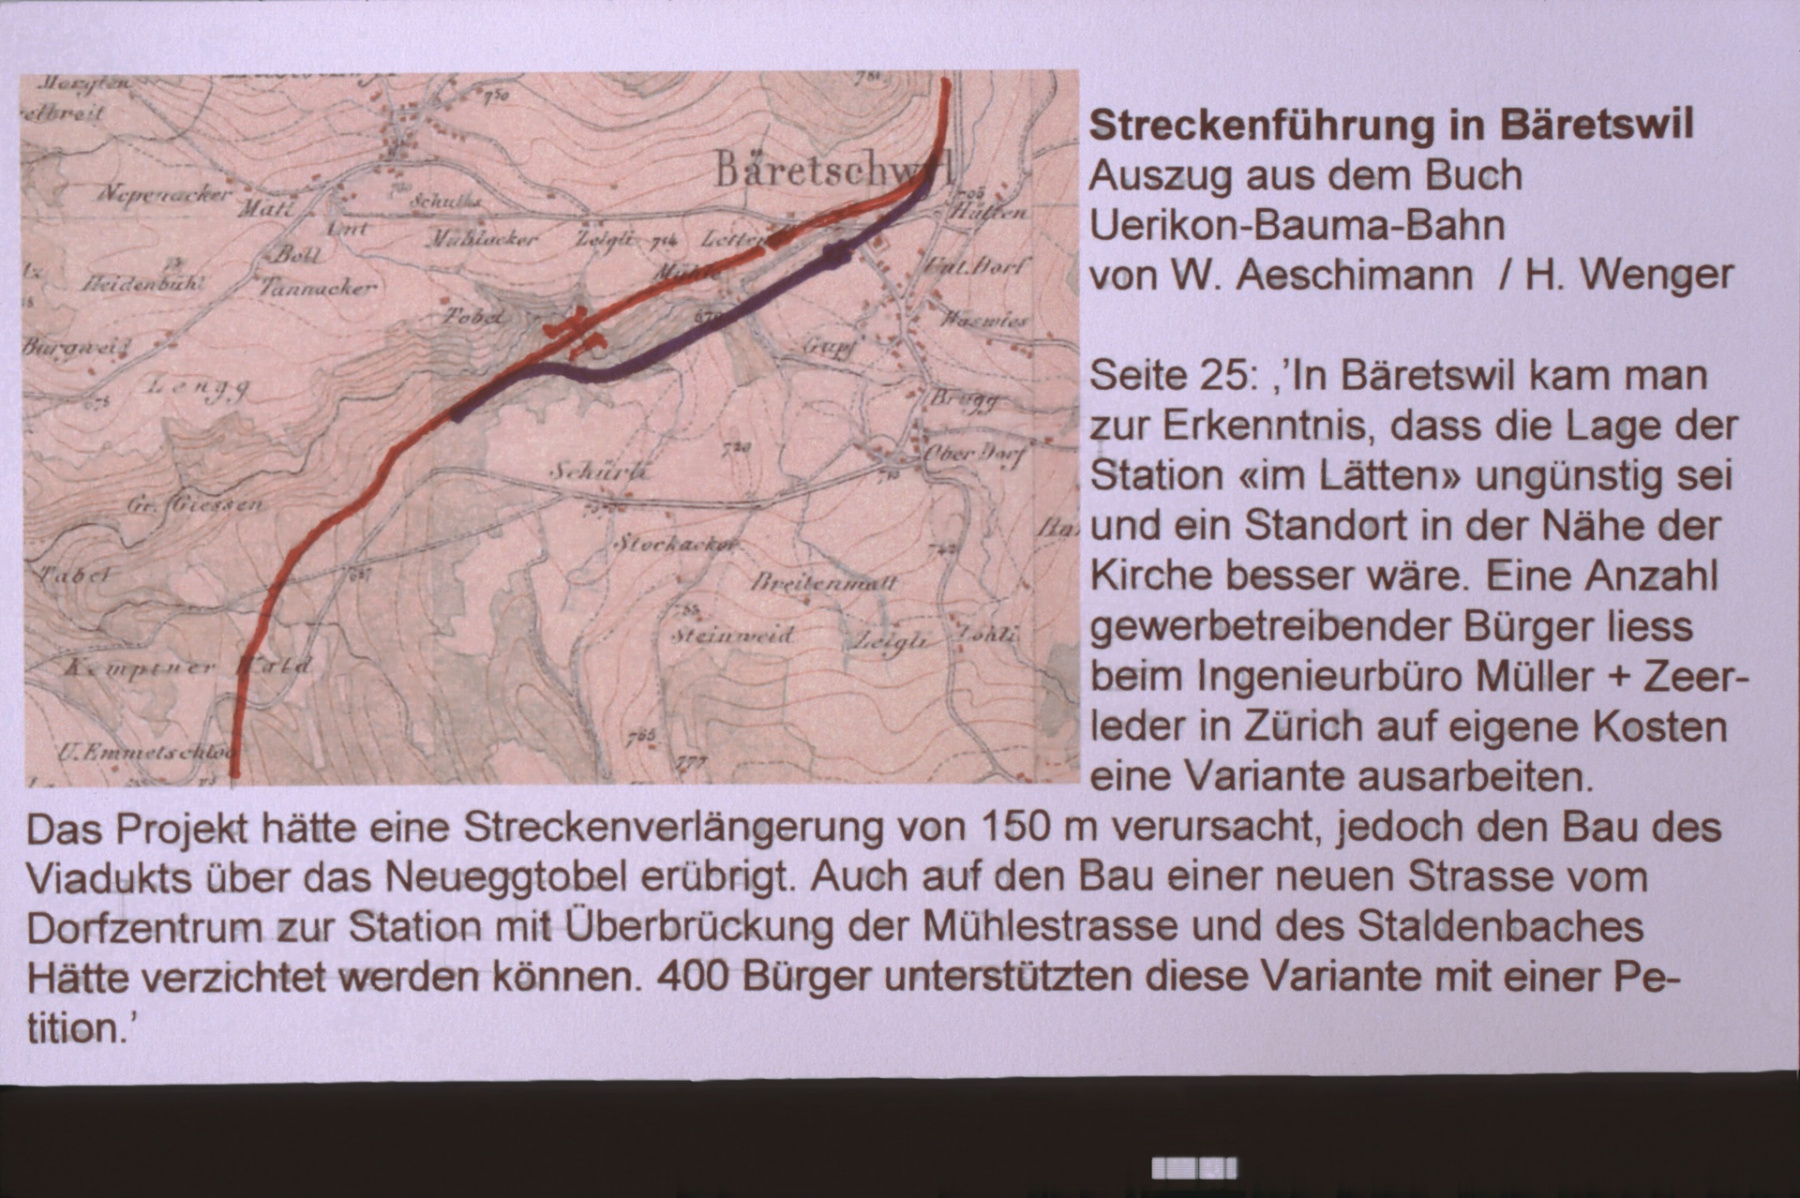 UeBB. Projekt für Streckenführung in Bäretswil, 150m länger, kein Neuegg Viadukt